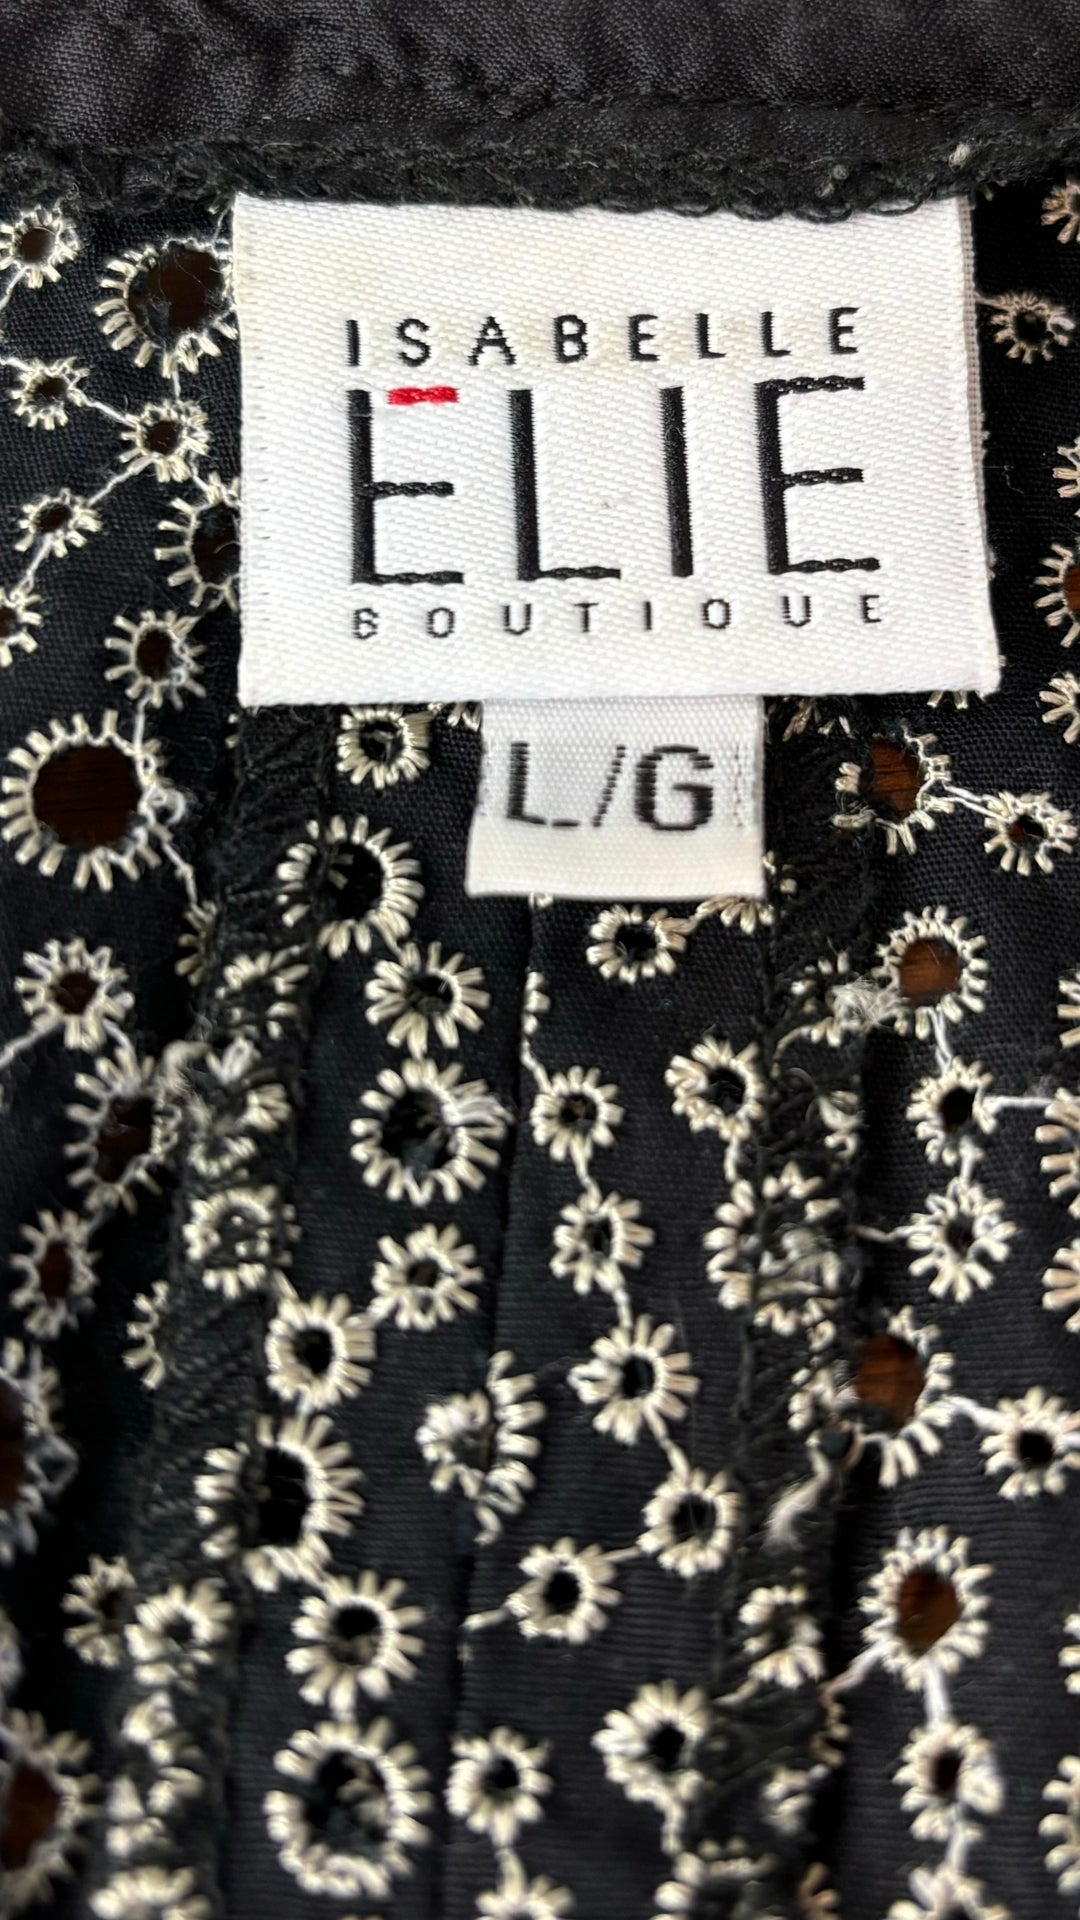 Robe en broderie anglaise Isabelle Elie Boutique, taille large. Vue de l'étiquette de marque et taille.